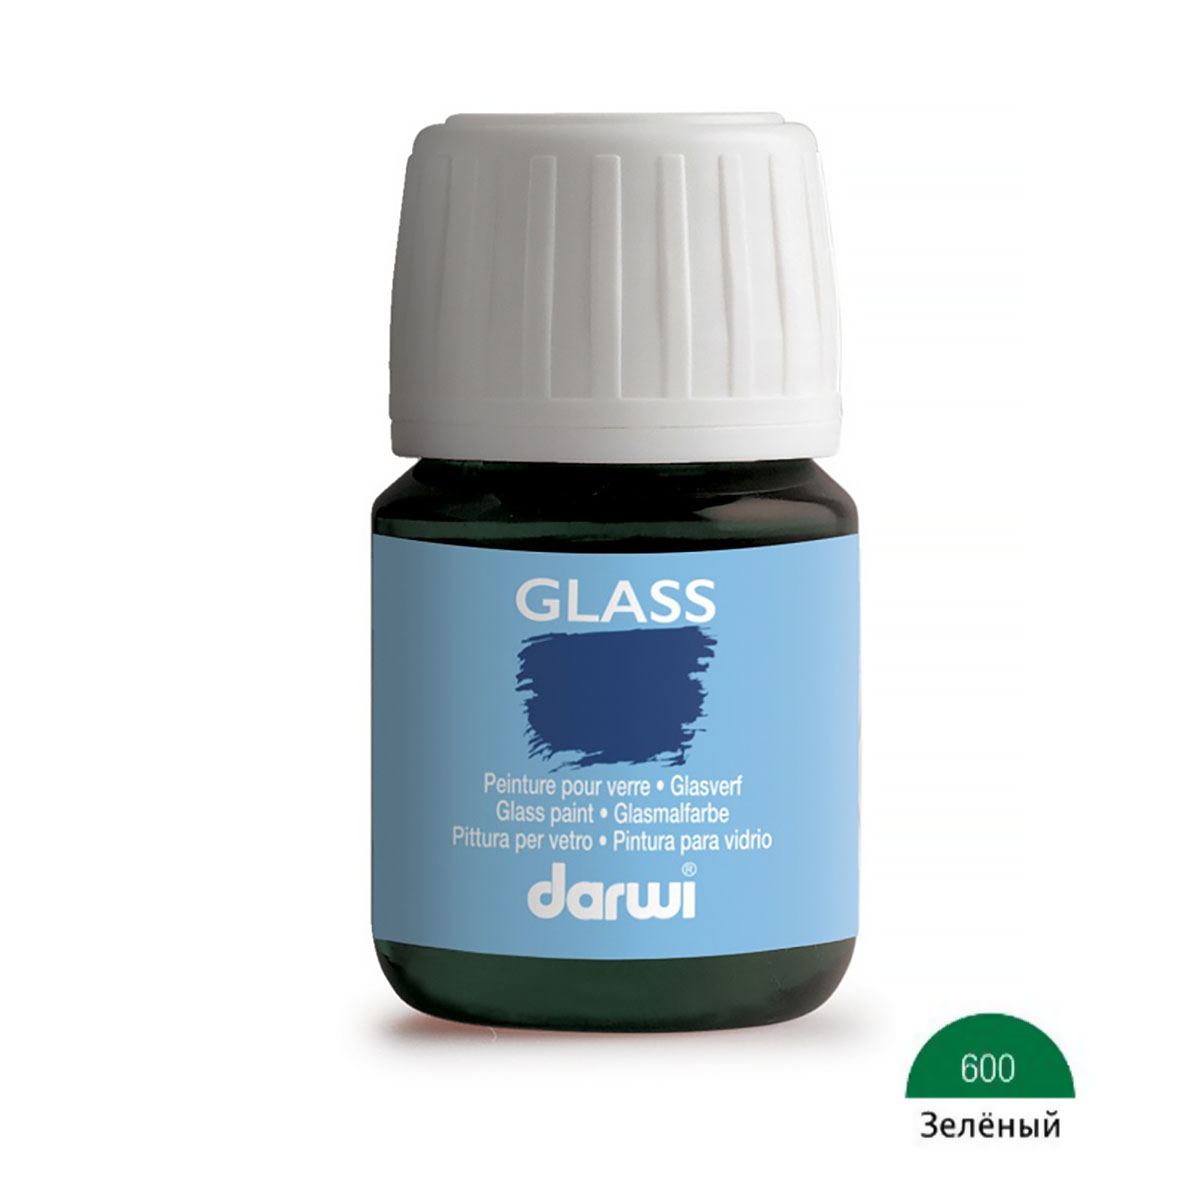 Краска для стекла Darwi Glass, DA0700030, 30 мл (600 зеленый)